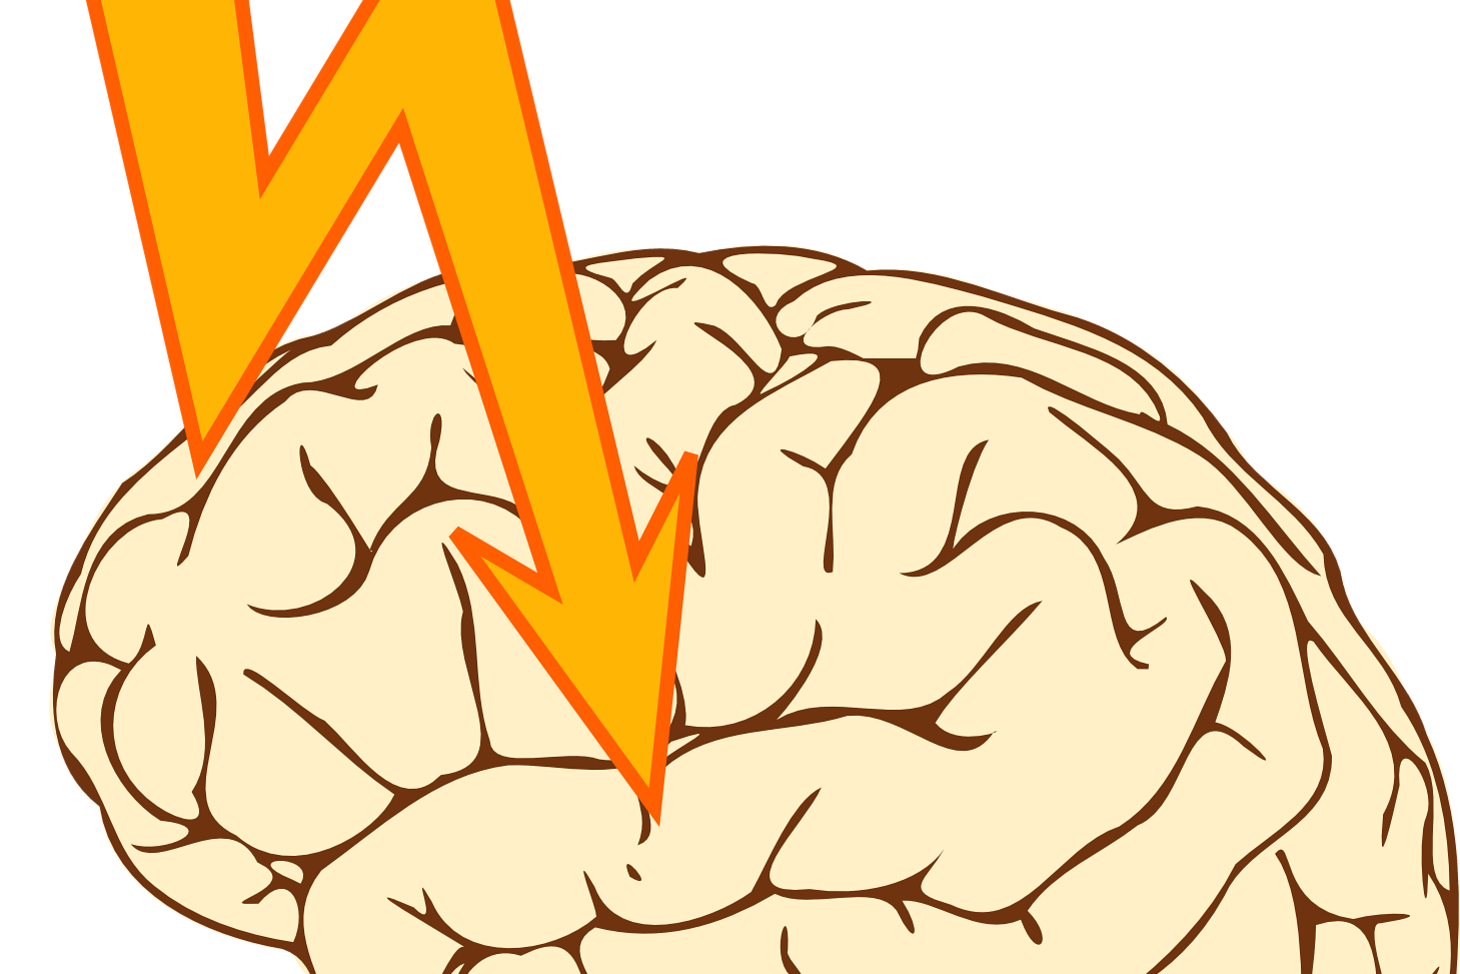 Brain showing energy symbol indicating epilepsy